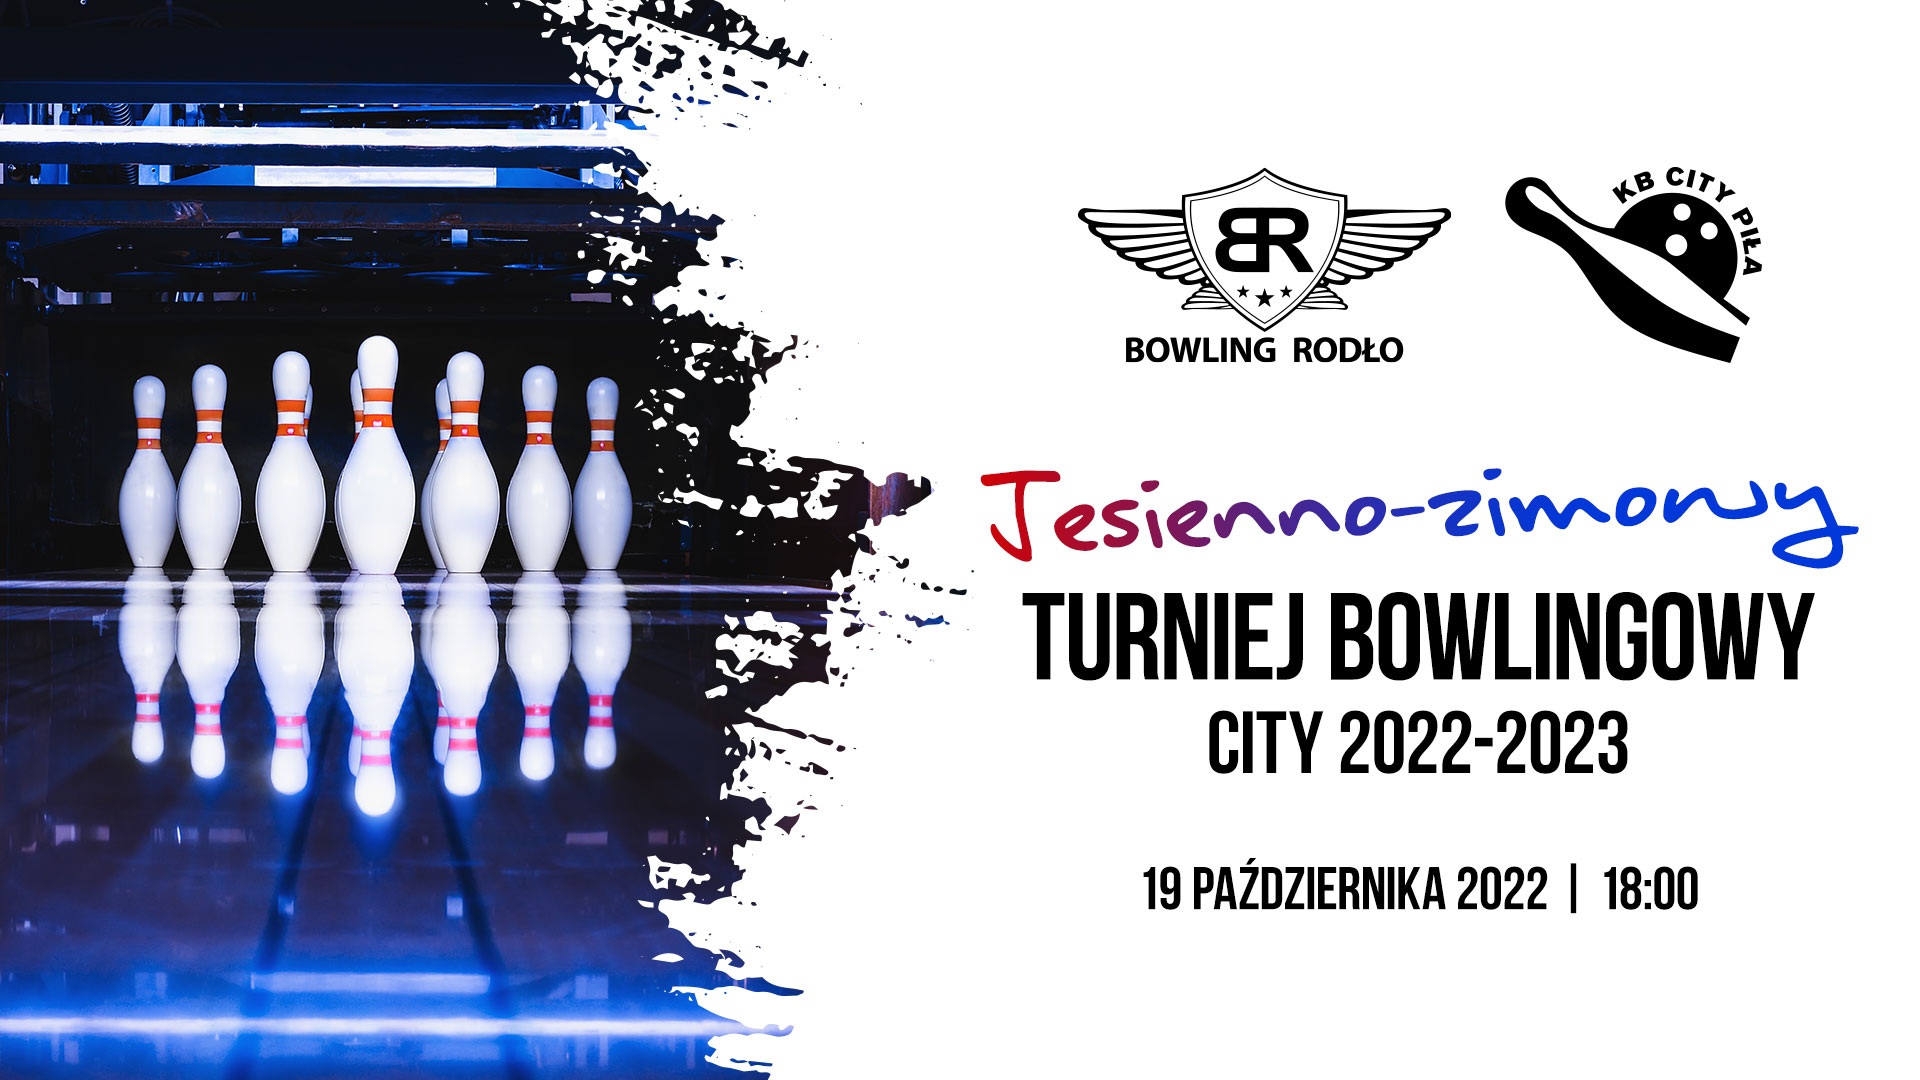 Turniej bowlingowy jesień-zima 2022